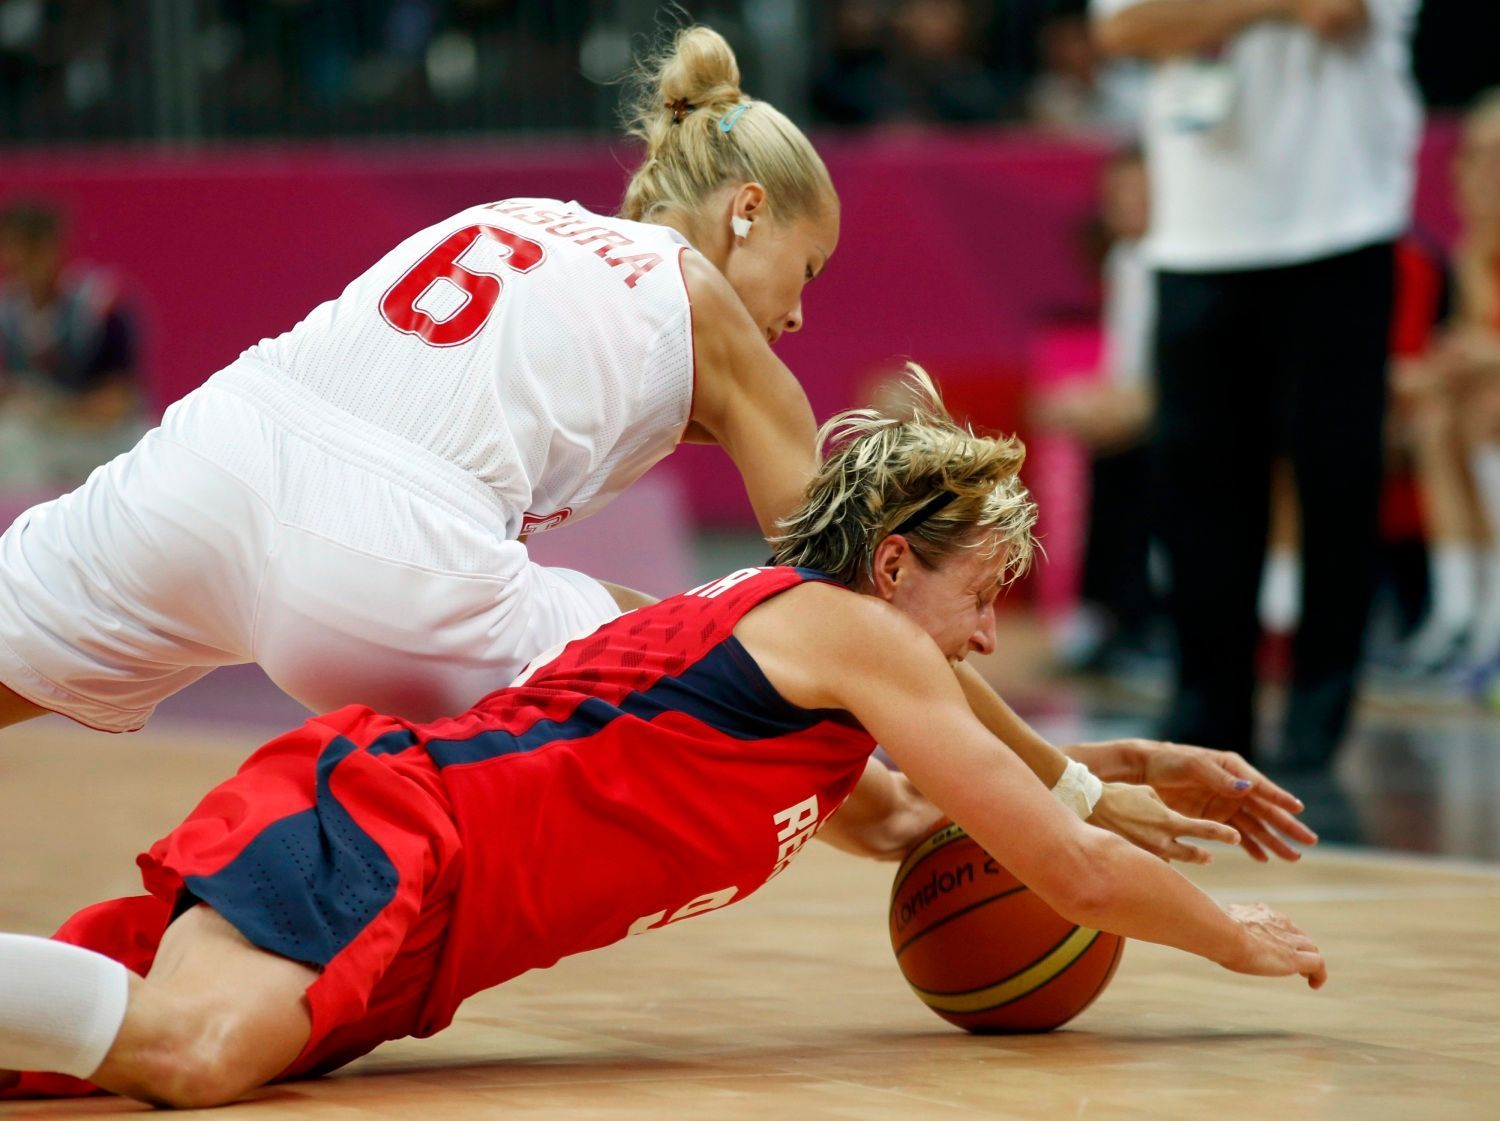 Česká basketbalistka Hana Horáková padá v souboji s Antonií Misuriaovou v utkání skupiny A na OH 2012 v Londýně.